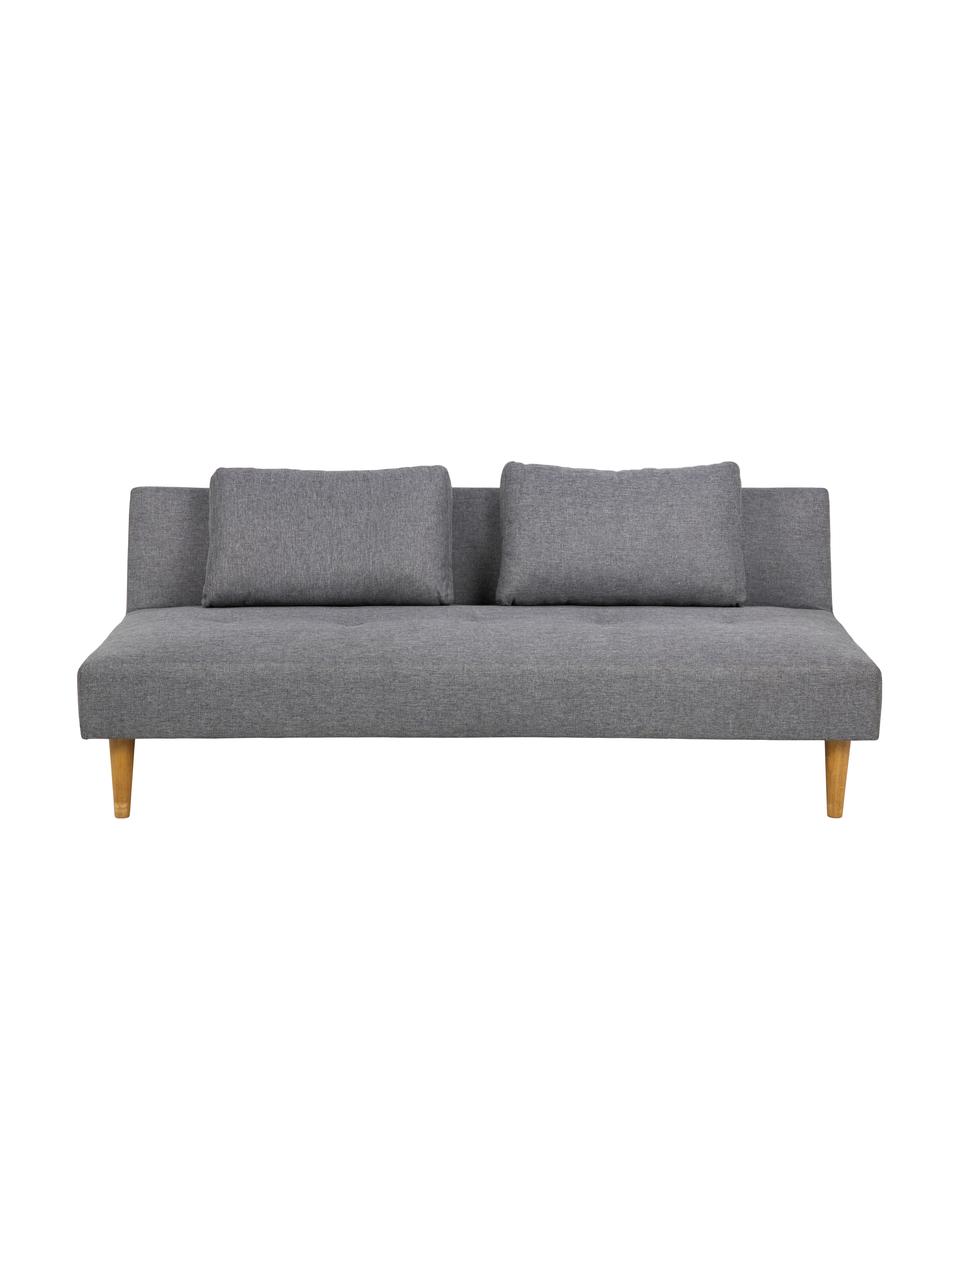 Schlafsofa Lucca (2-Sitzer) in Grau, Bezug: 100% Polyester Der hochwe, grau, B 180 x T 86 cm